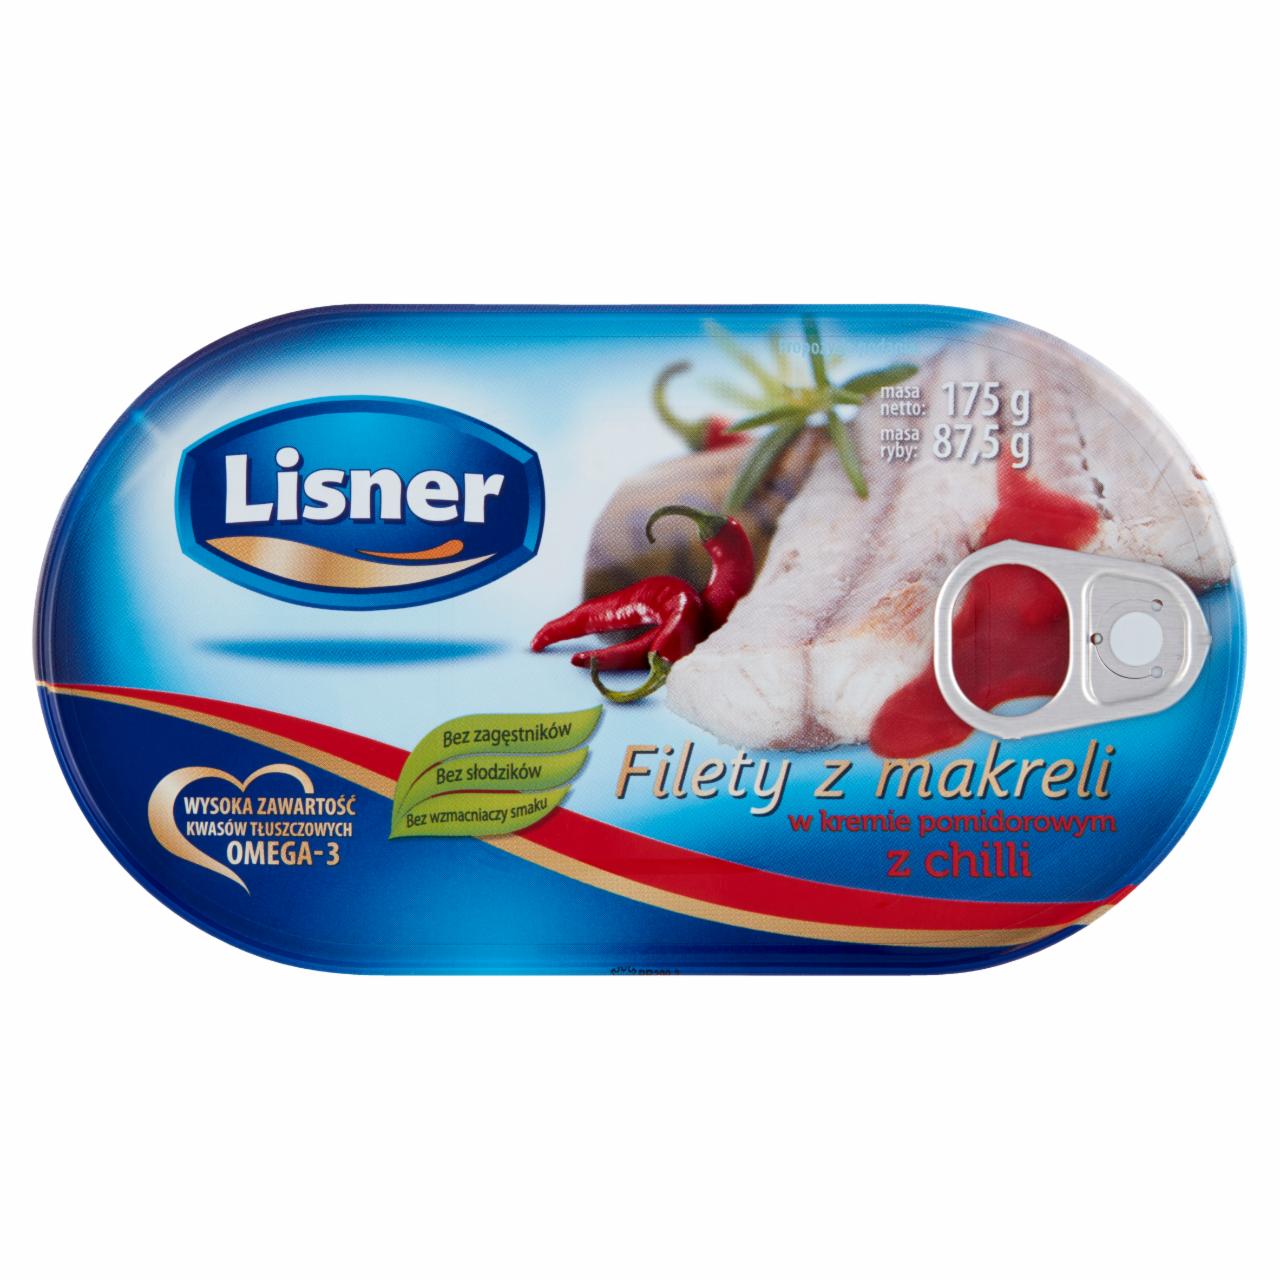 Zdjęcia - Lisner Filety z makreli w kremie pomidorowym z chilli 175 g